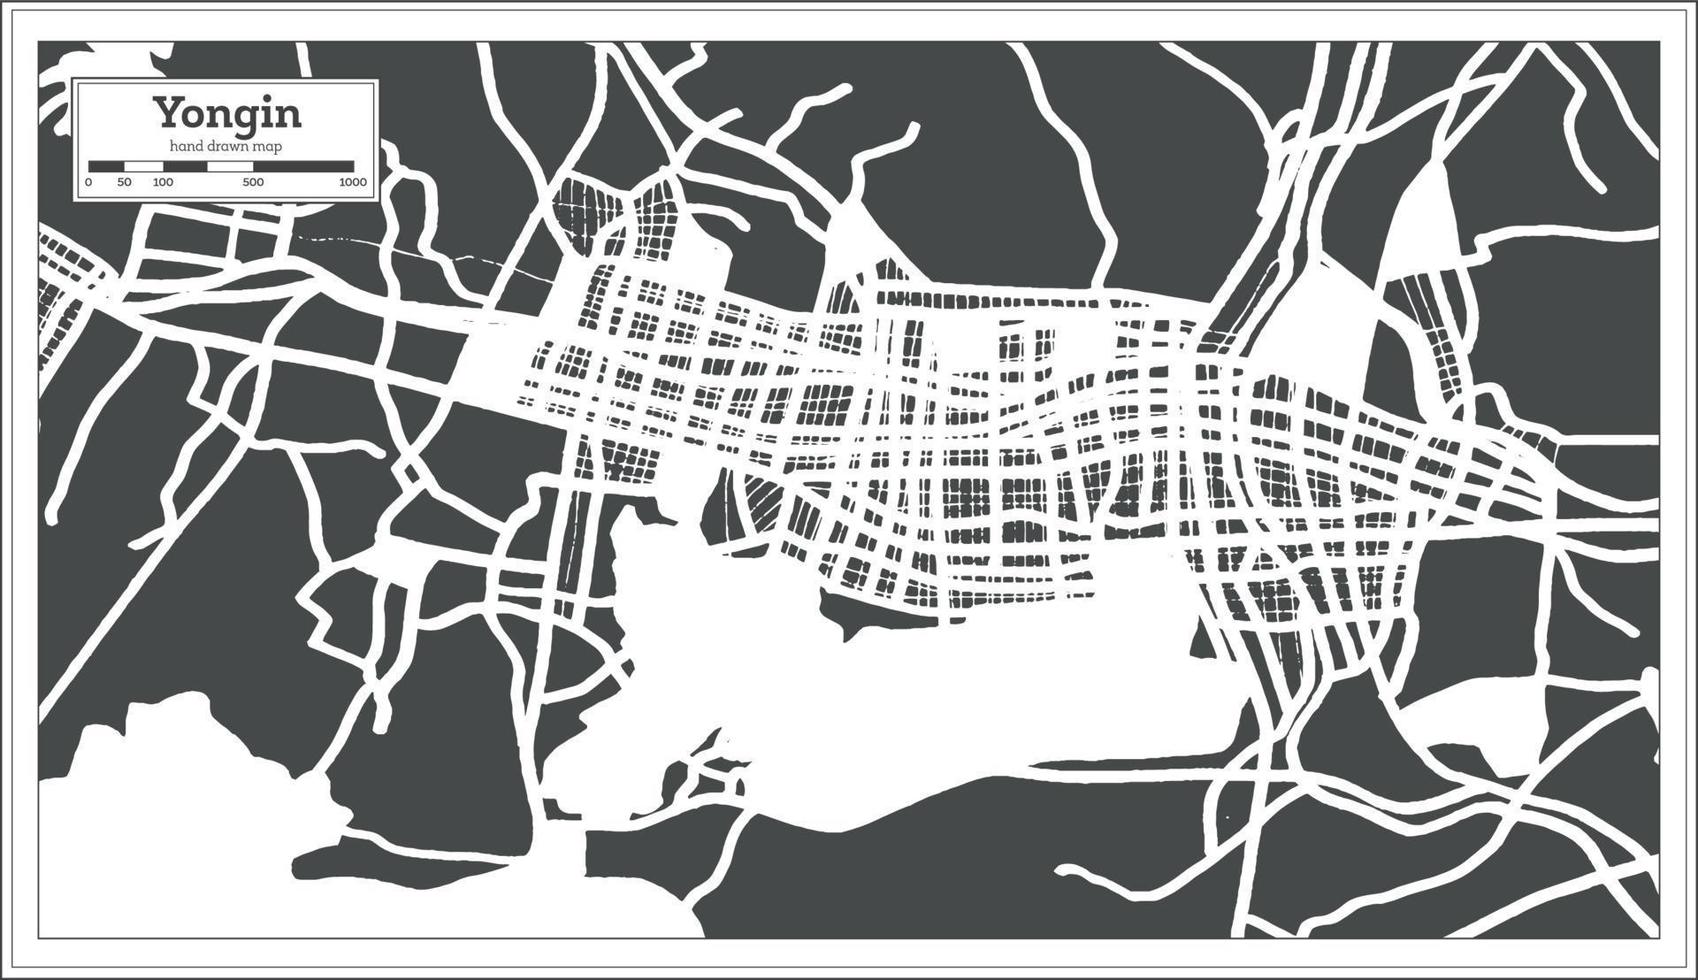 plan de la ville de yongin en corée du sud dans un style rétro. carte muette. vecteur